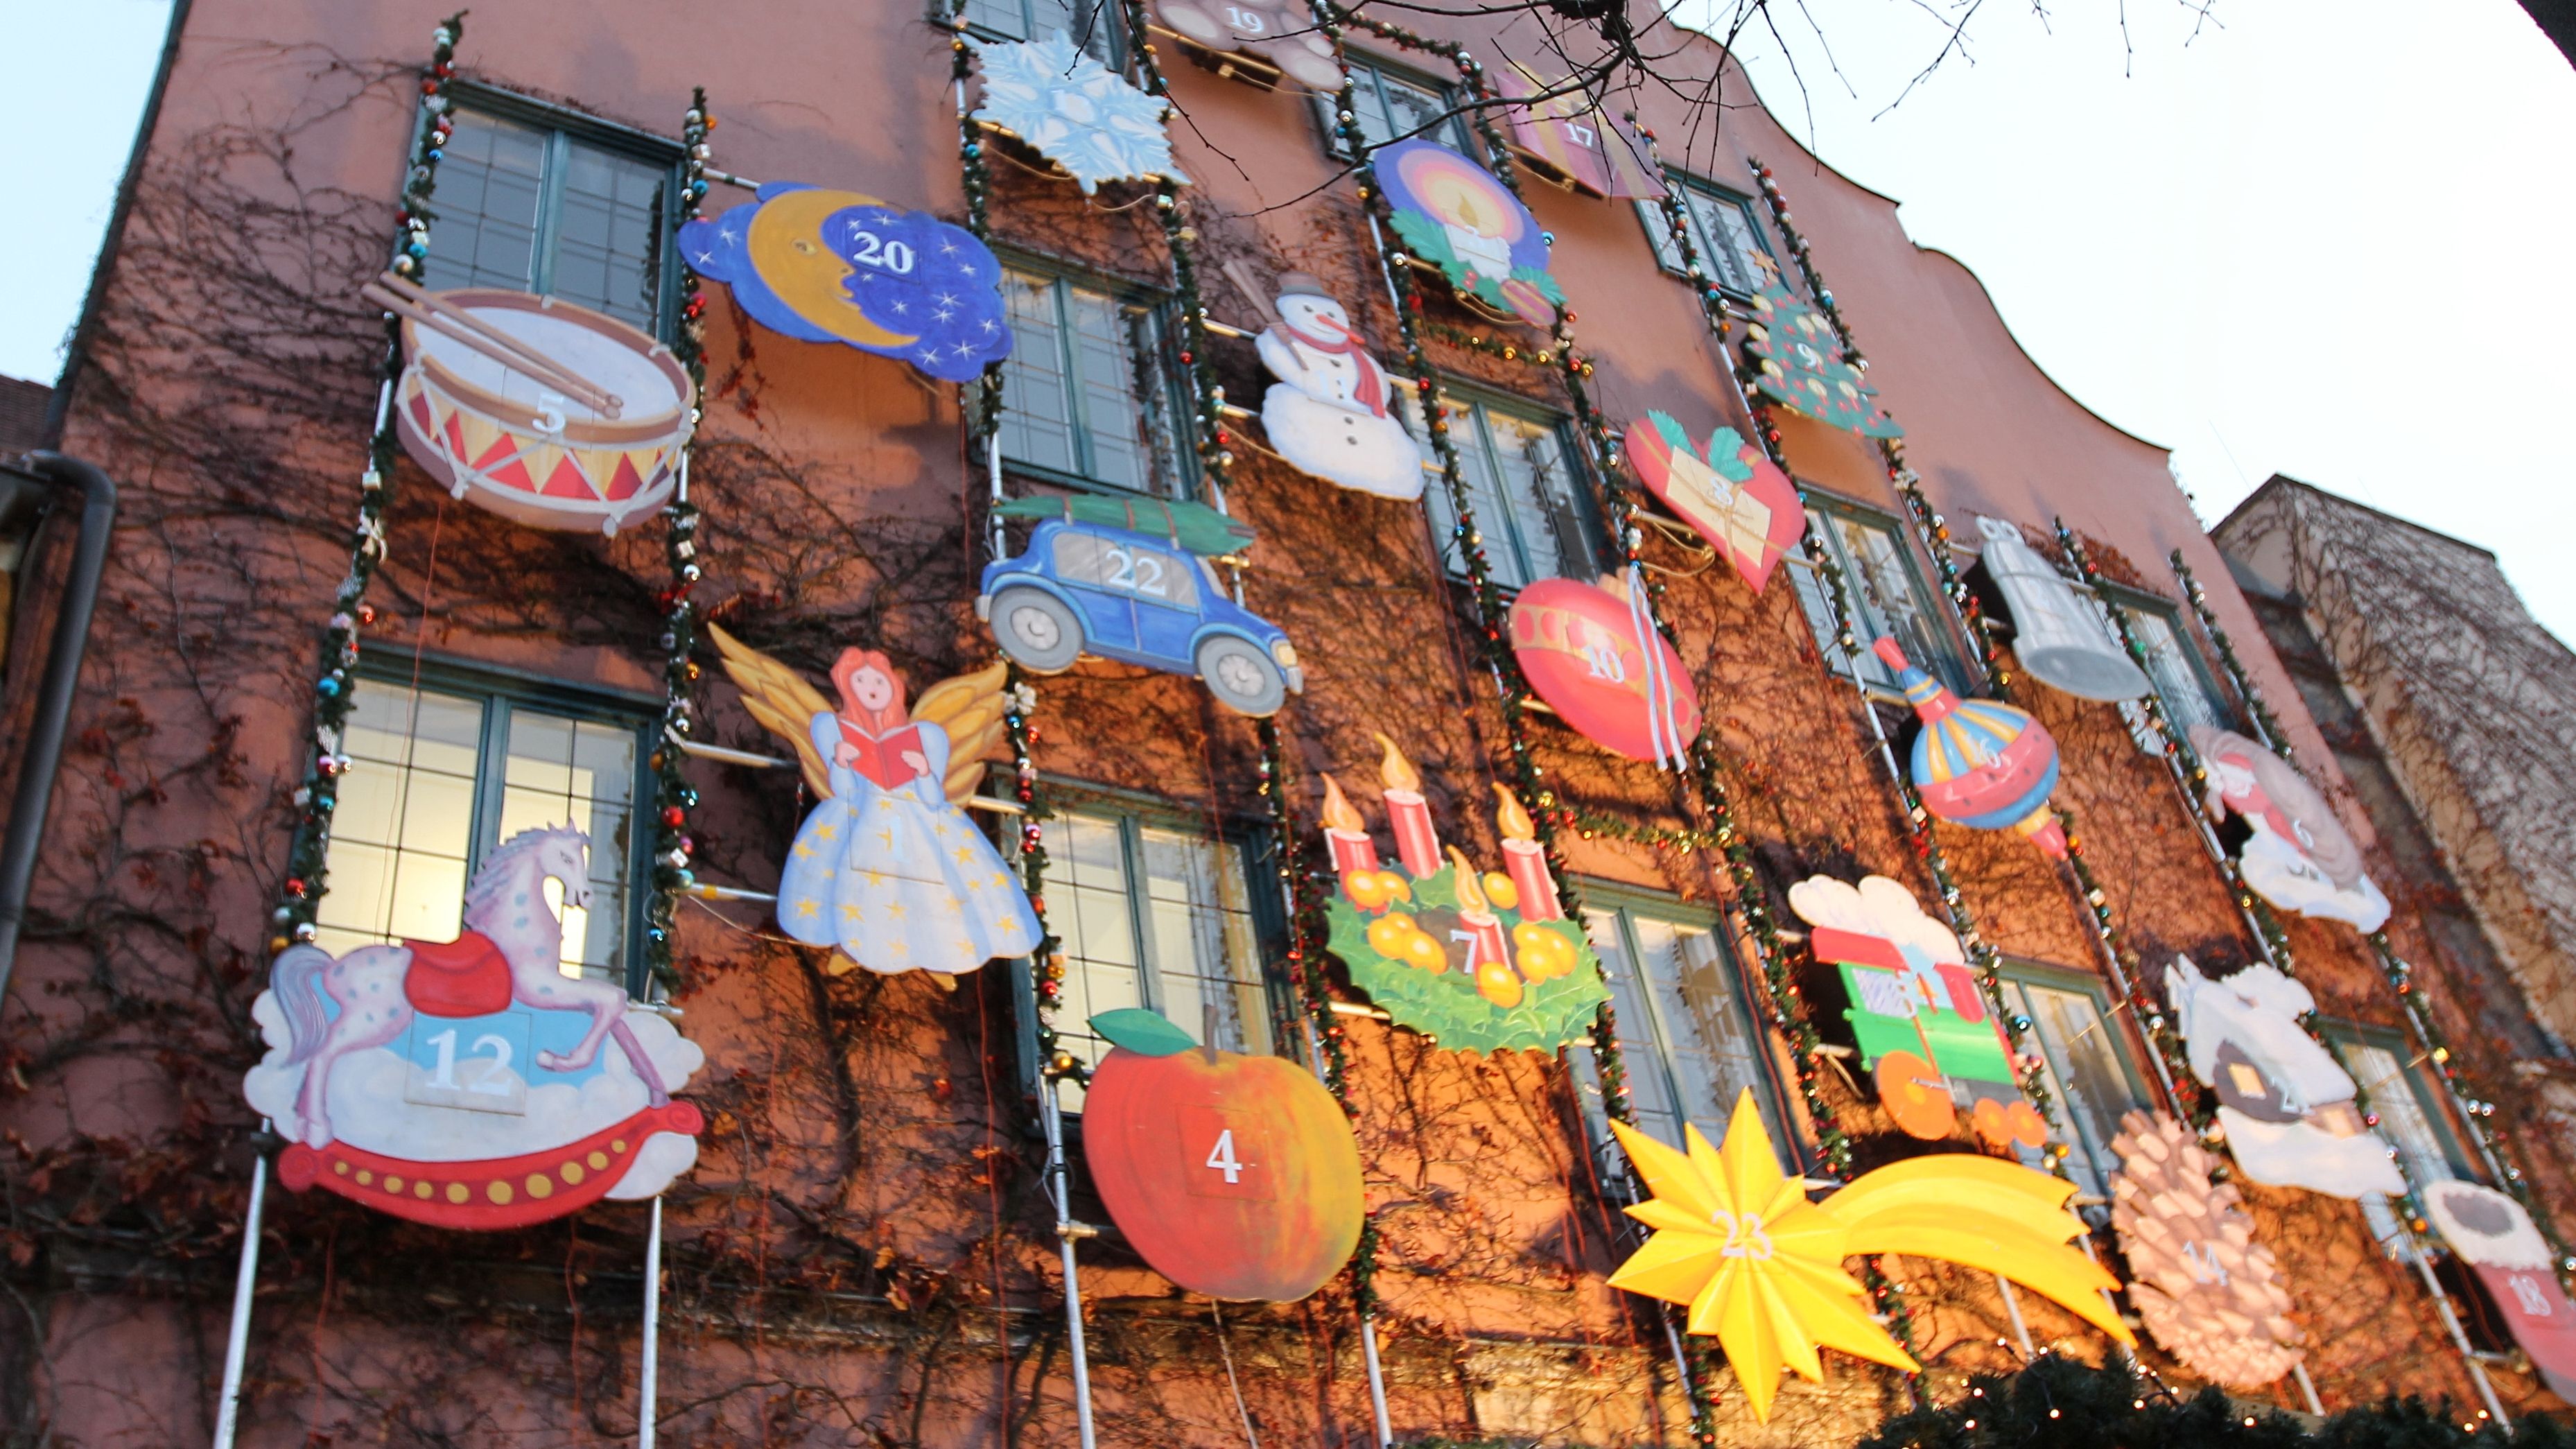 Adventskalender an der Rathausfassade mit vielen Weihnachtsmotiven wie Engeln und Sternen